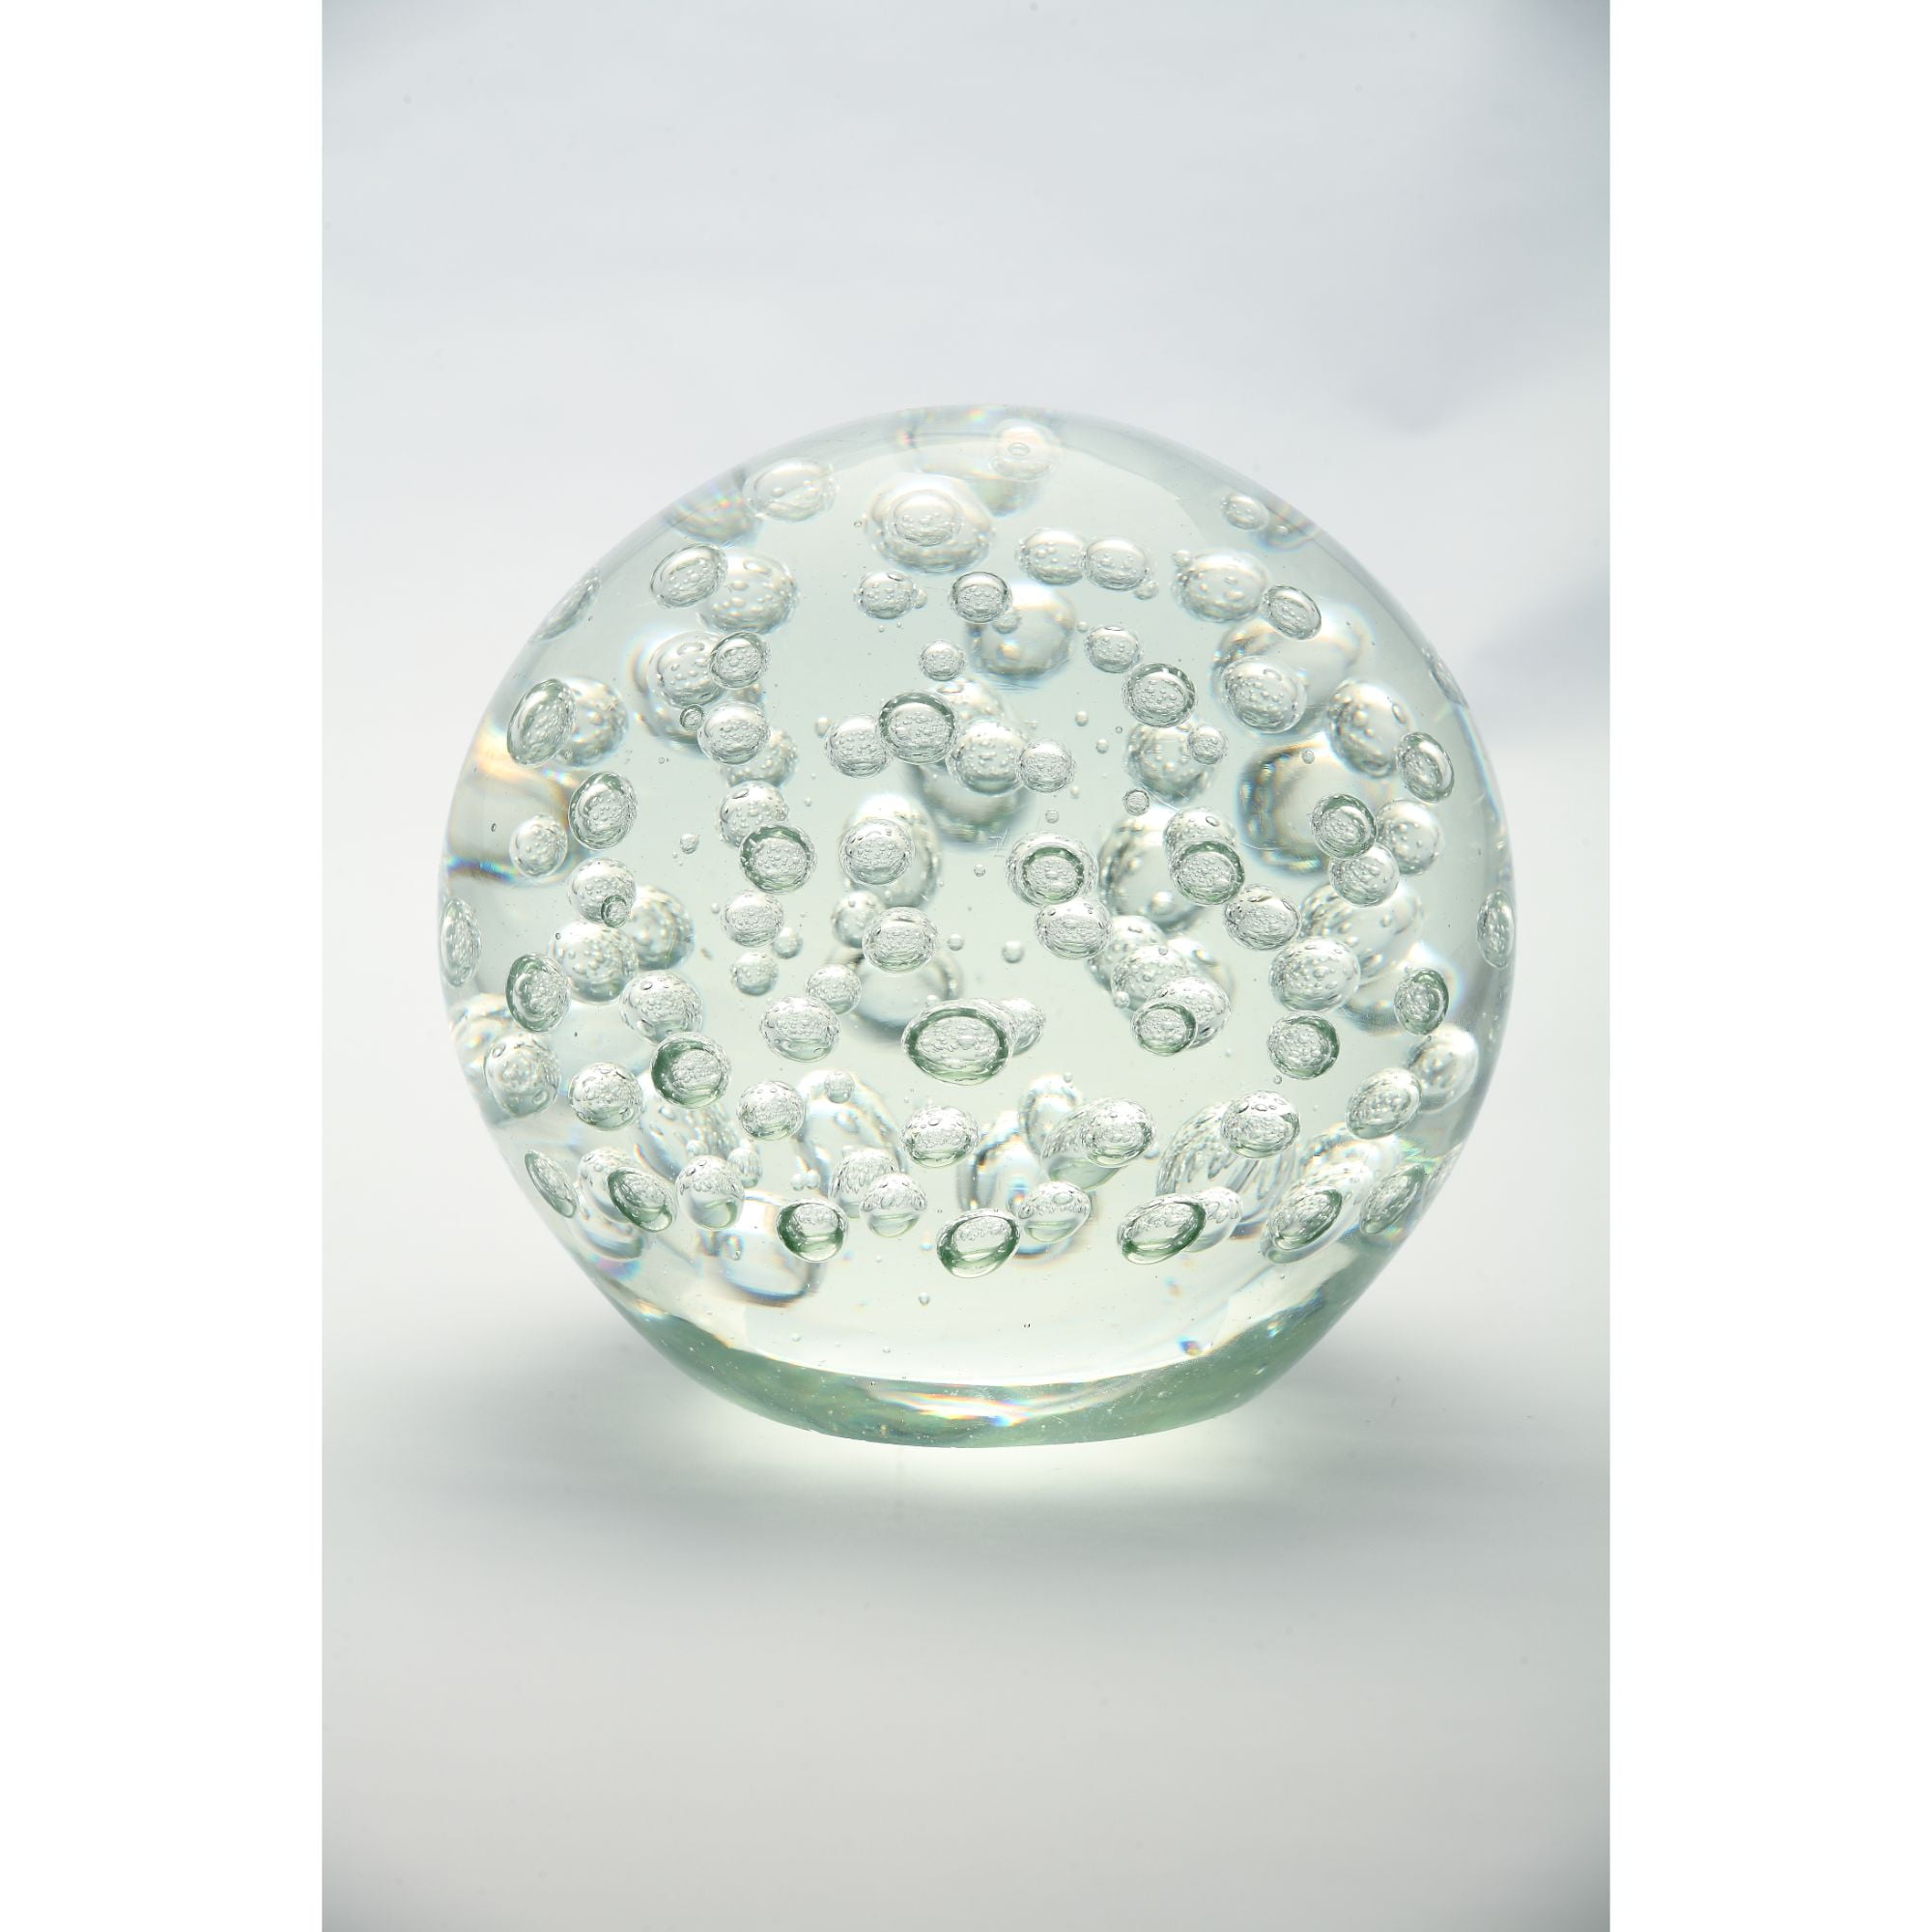 New 5" Hand Blown Art Glass Ball Paperweight Sculpture Figurine Bubble Clear 